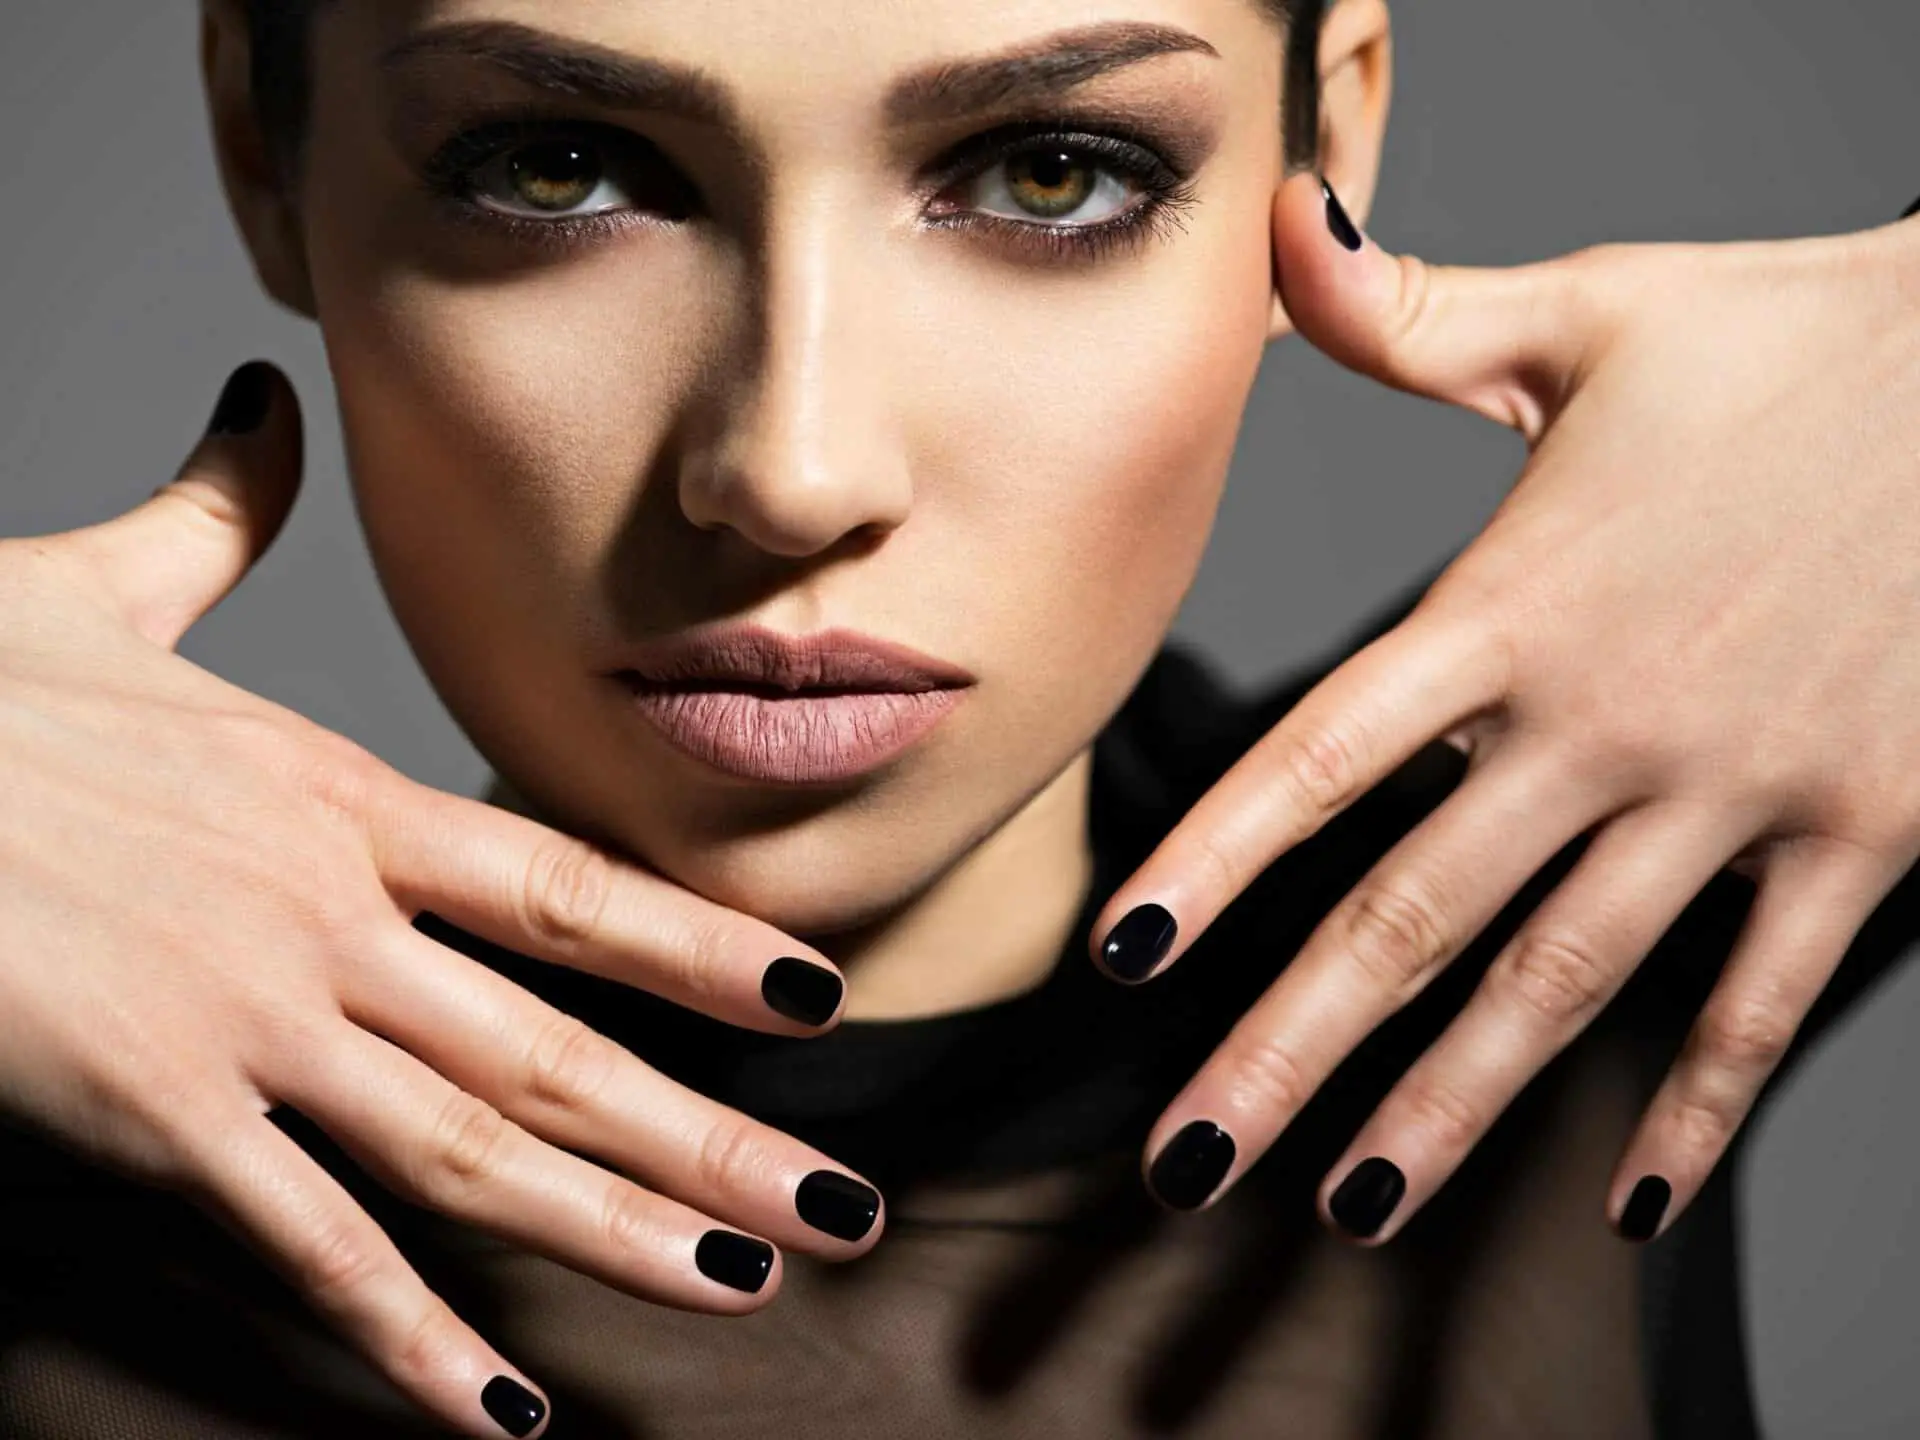 black nail polish symbolize